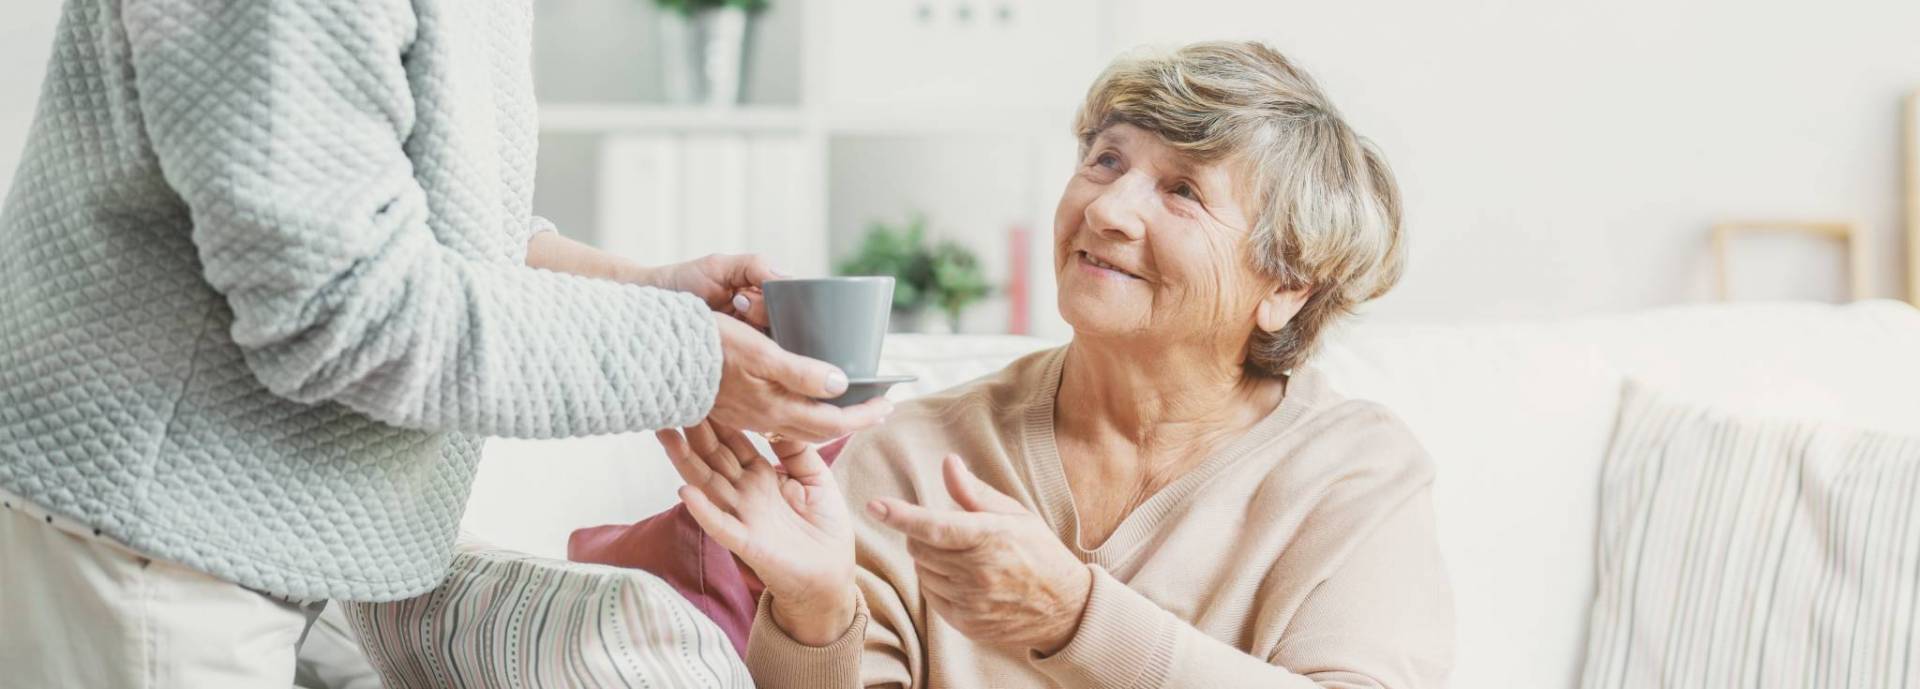 TriCare caring for seniors in Australia. Nursing homes.